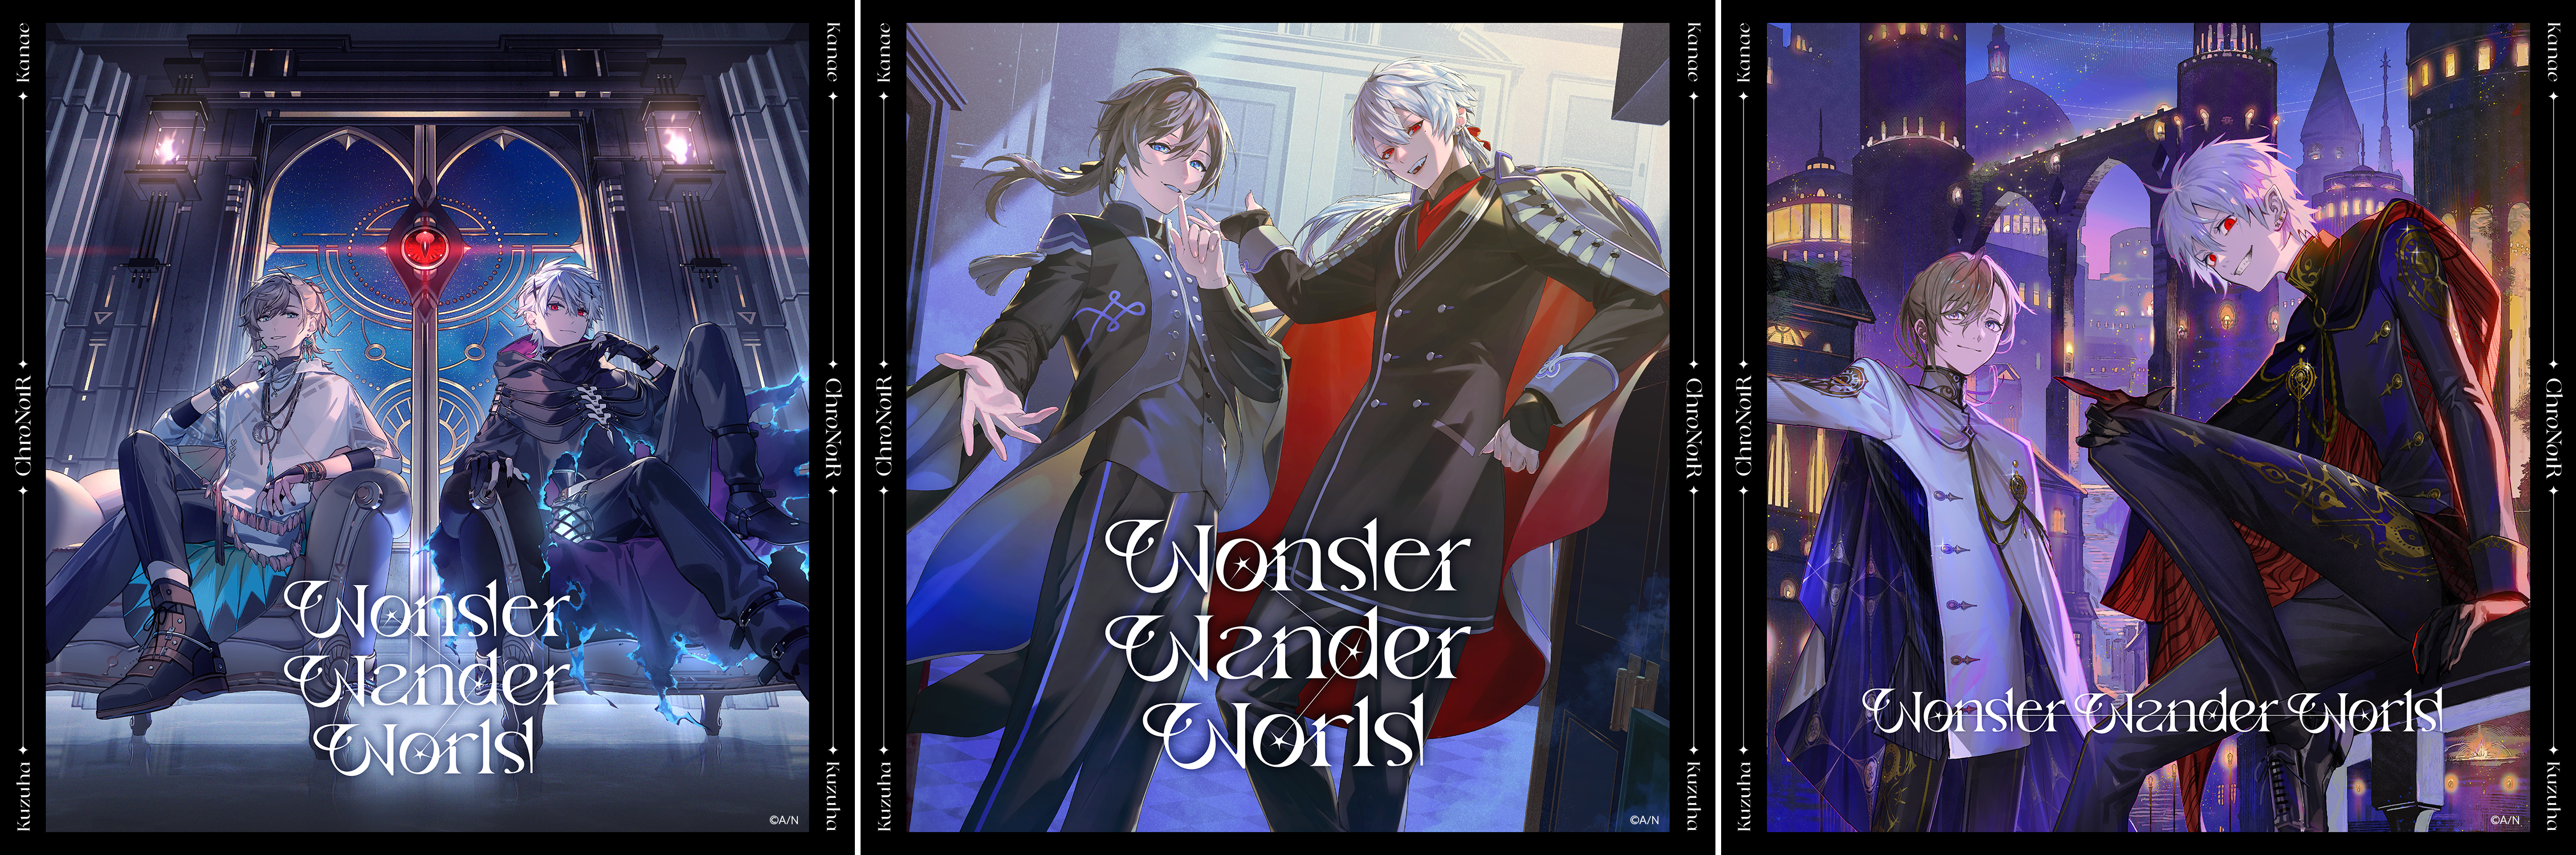 9,333円ChroNoiR Wonder Wander World コンプリートボックス